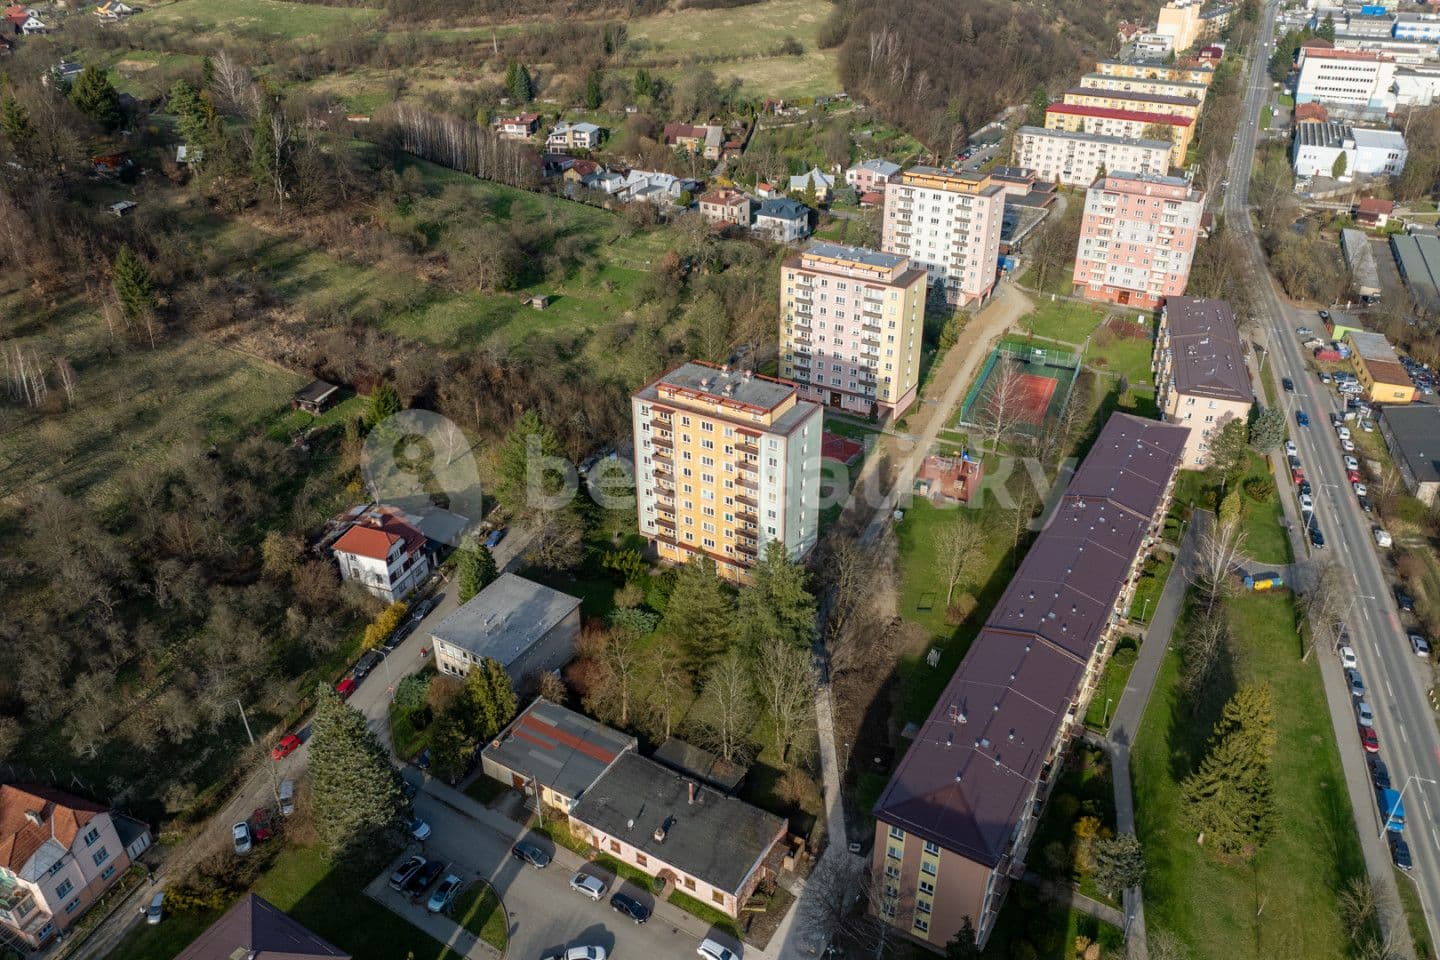 2 bedroom flat for sale, 53 m², Luh, Vsetín, Zlínský Region